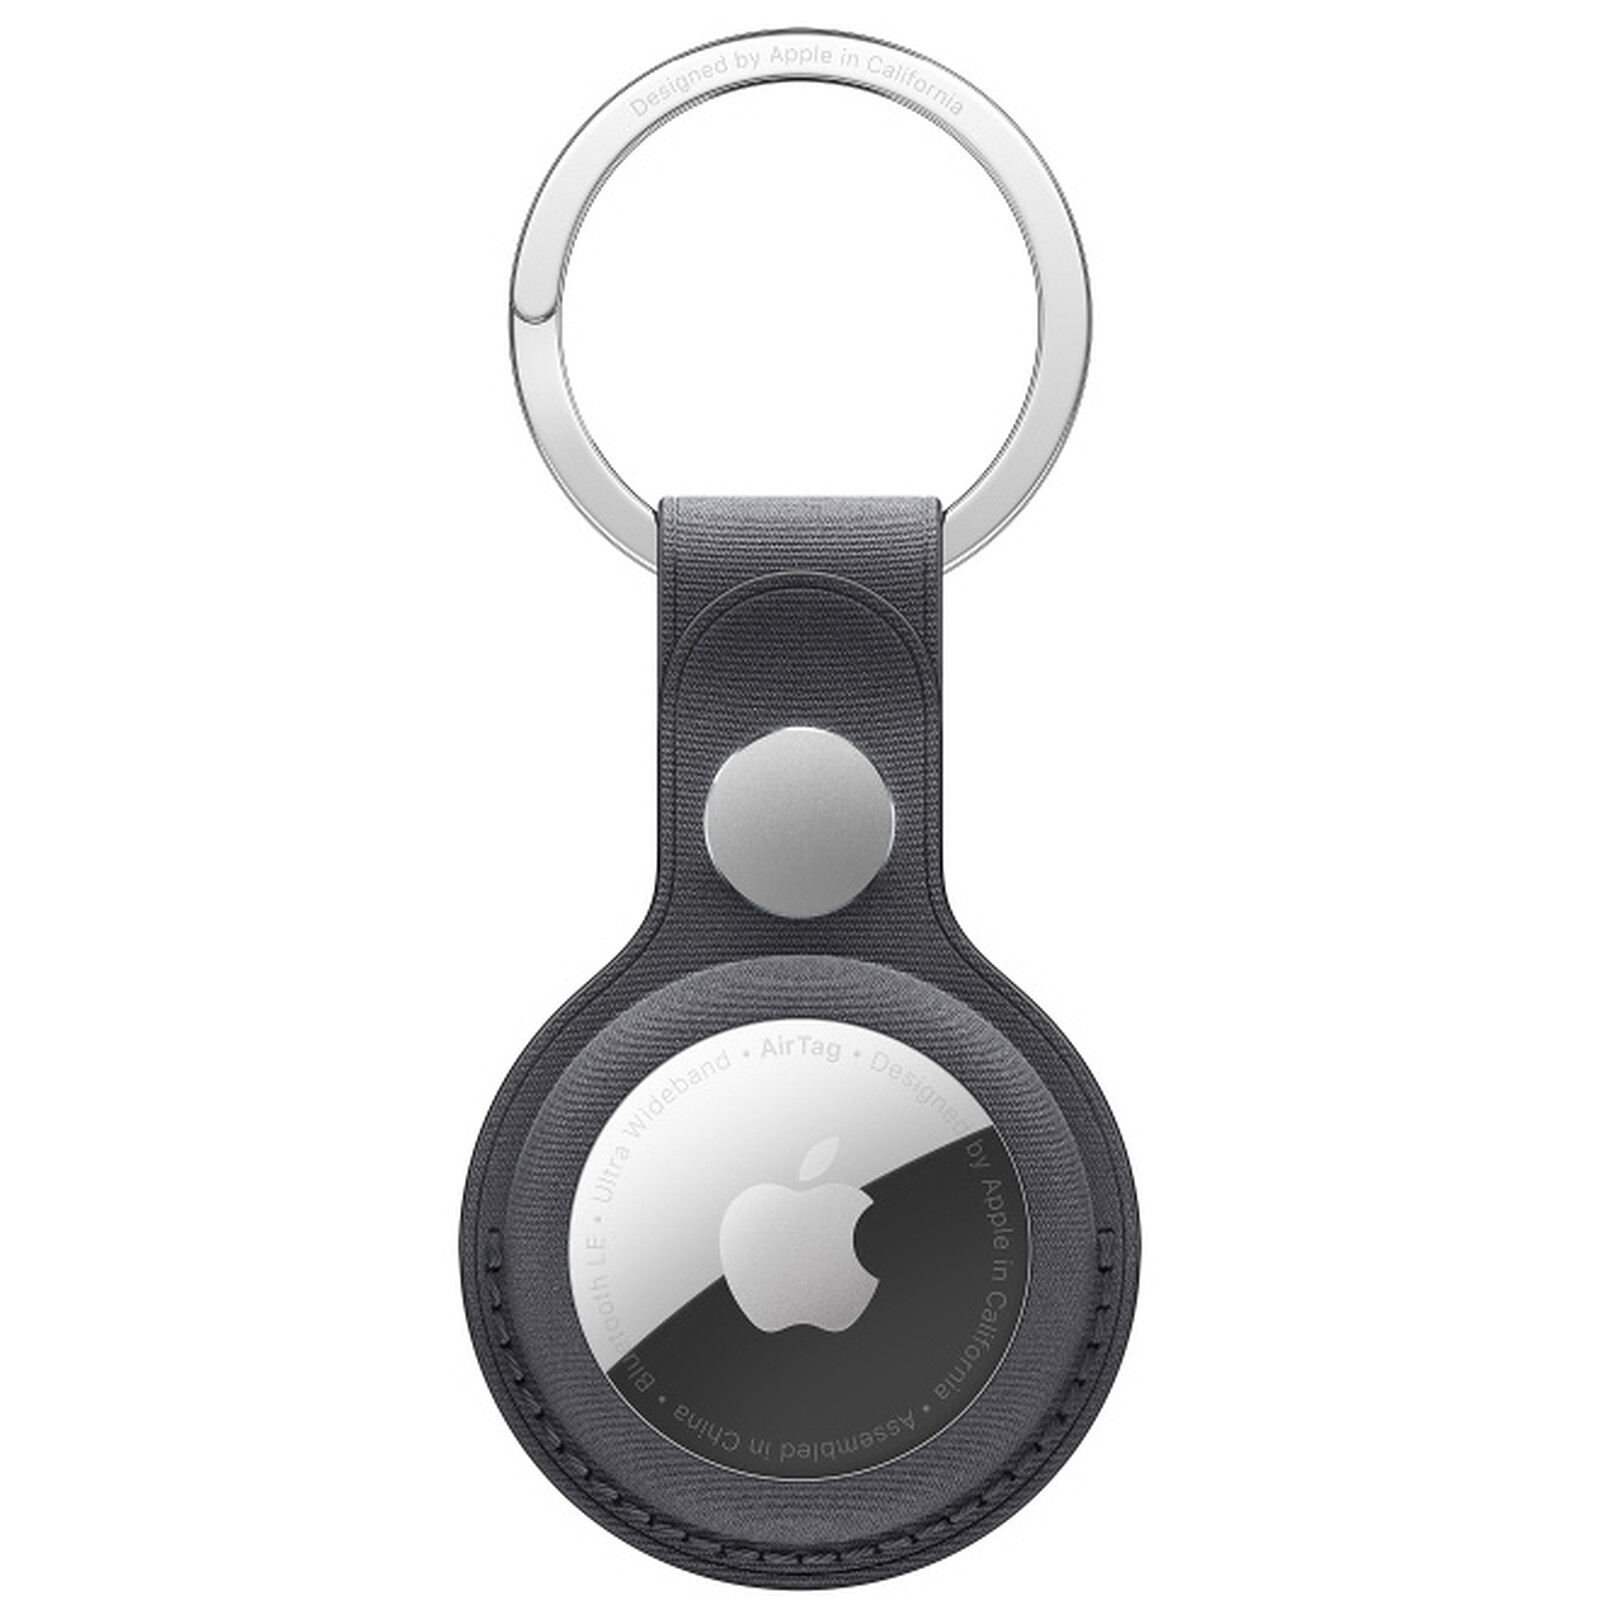 Meilleurs accessoires pour Apple AirTag : porte-clés, supports